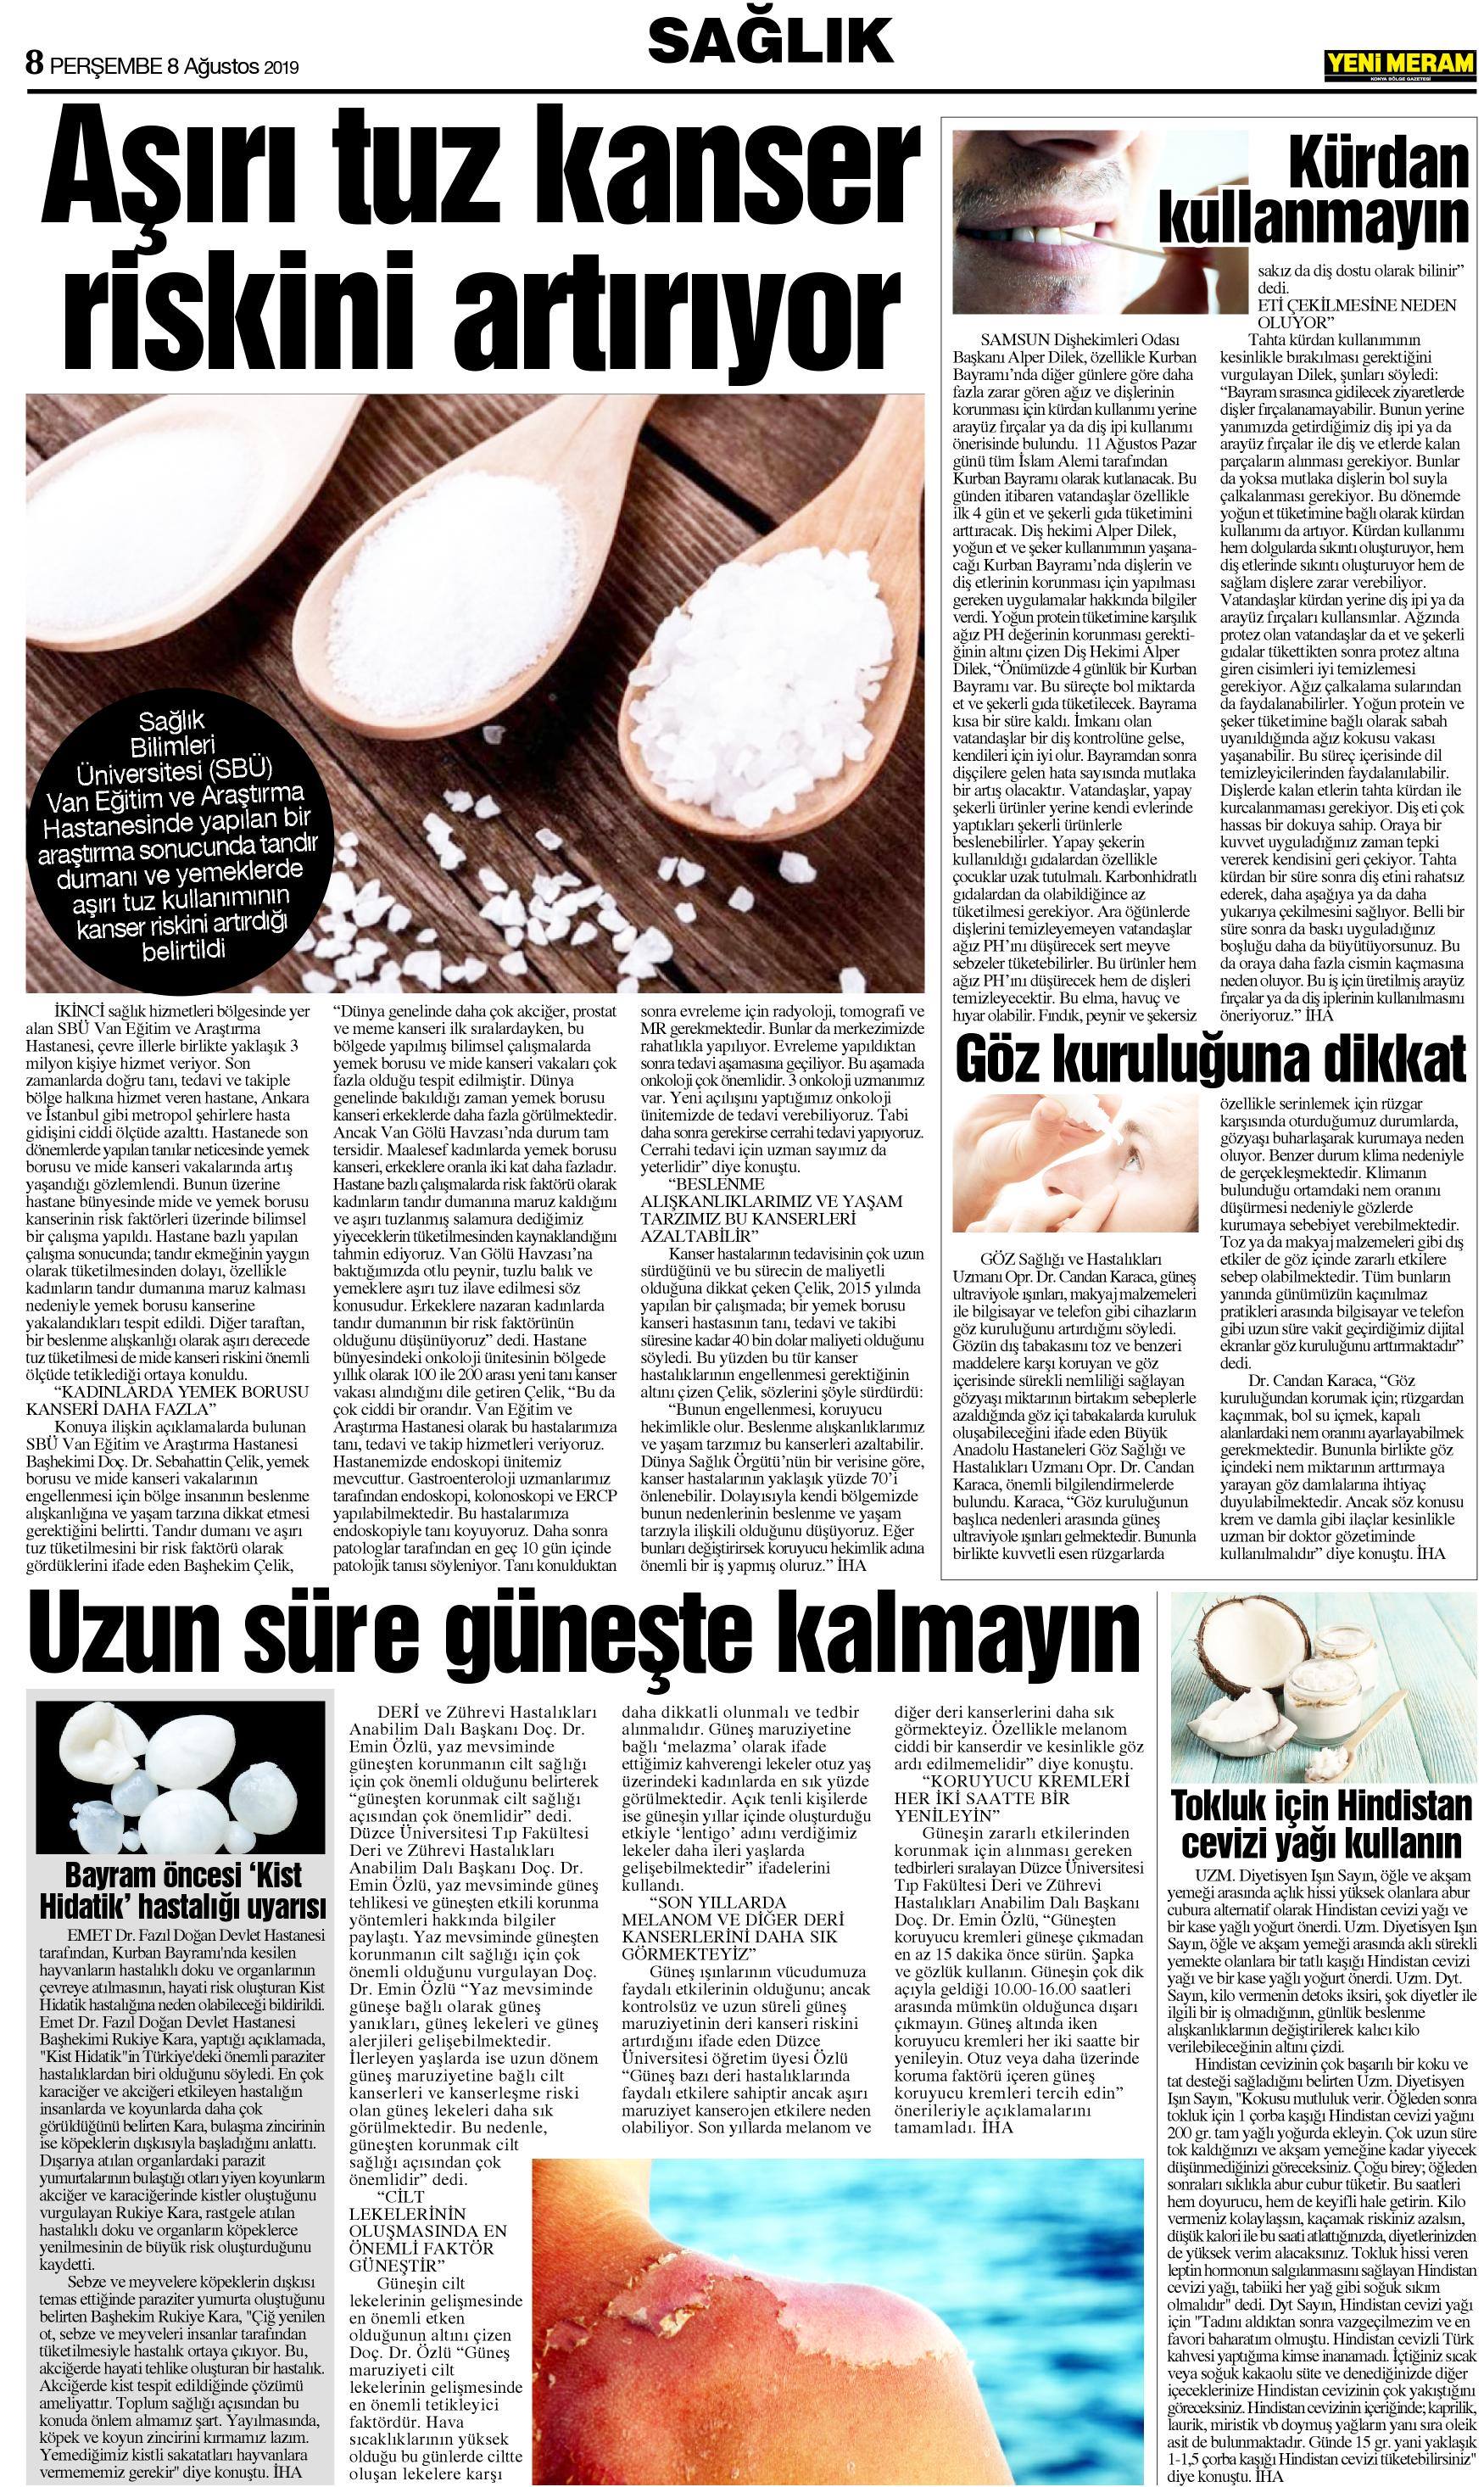 8 Ağustos 2019 Yeni Meram Gazetesi